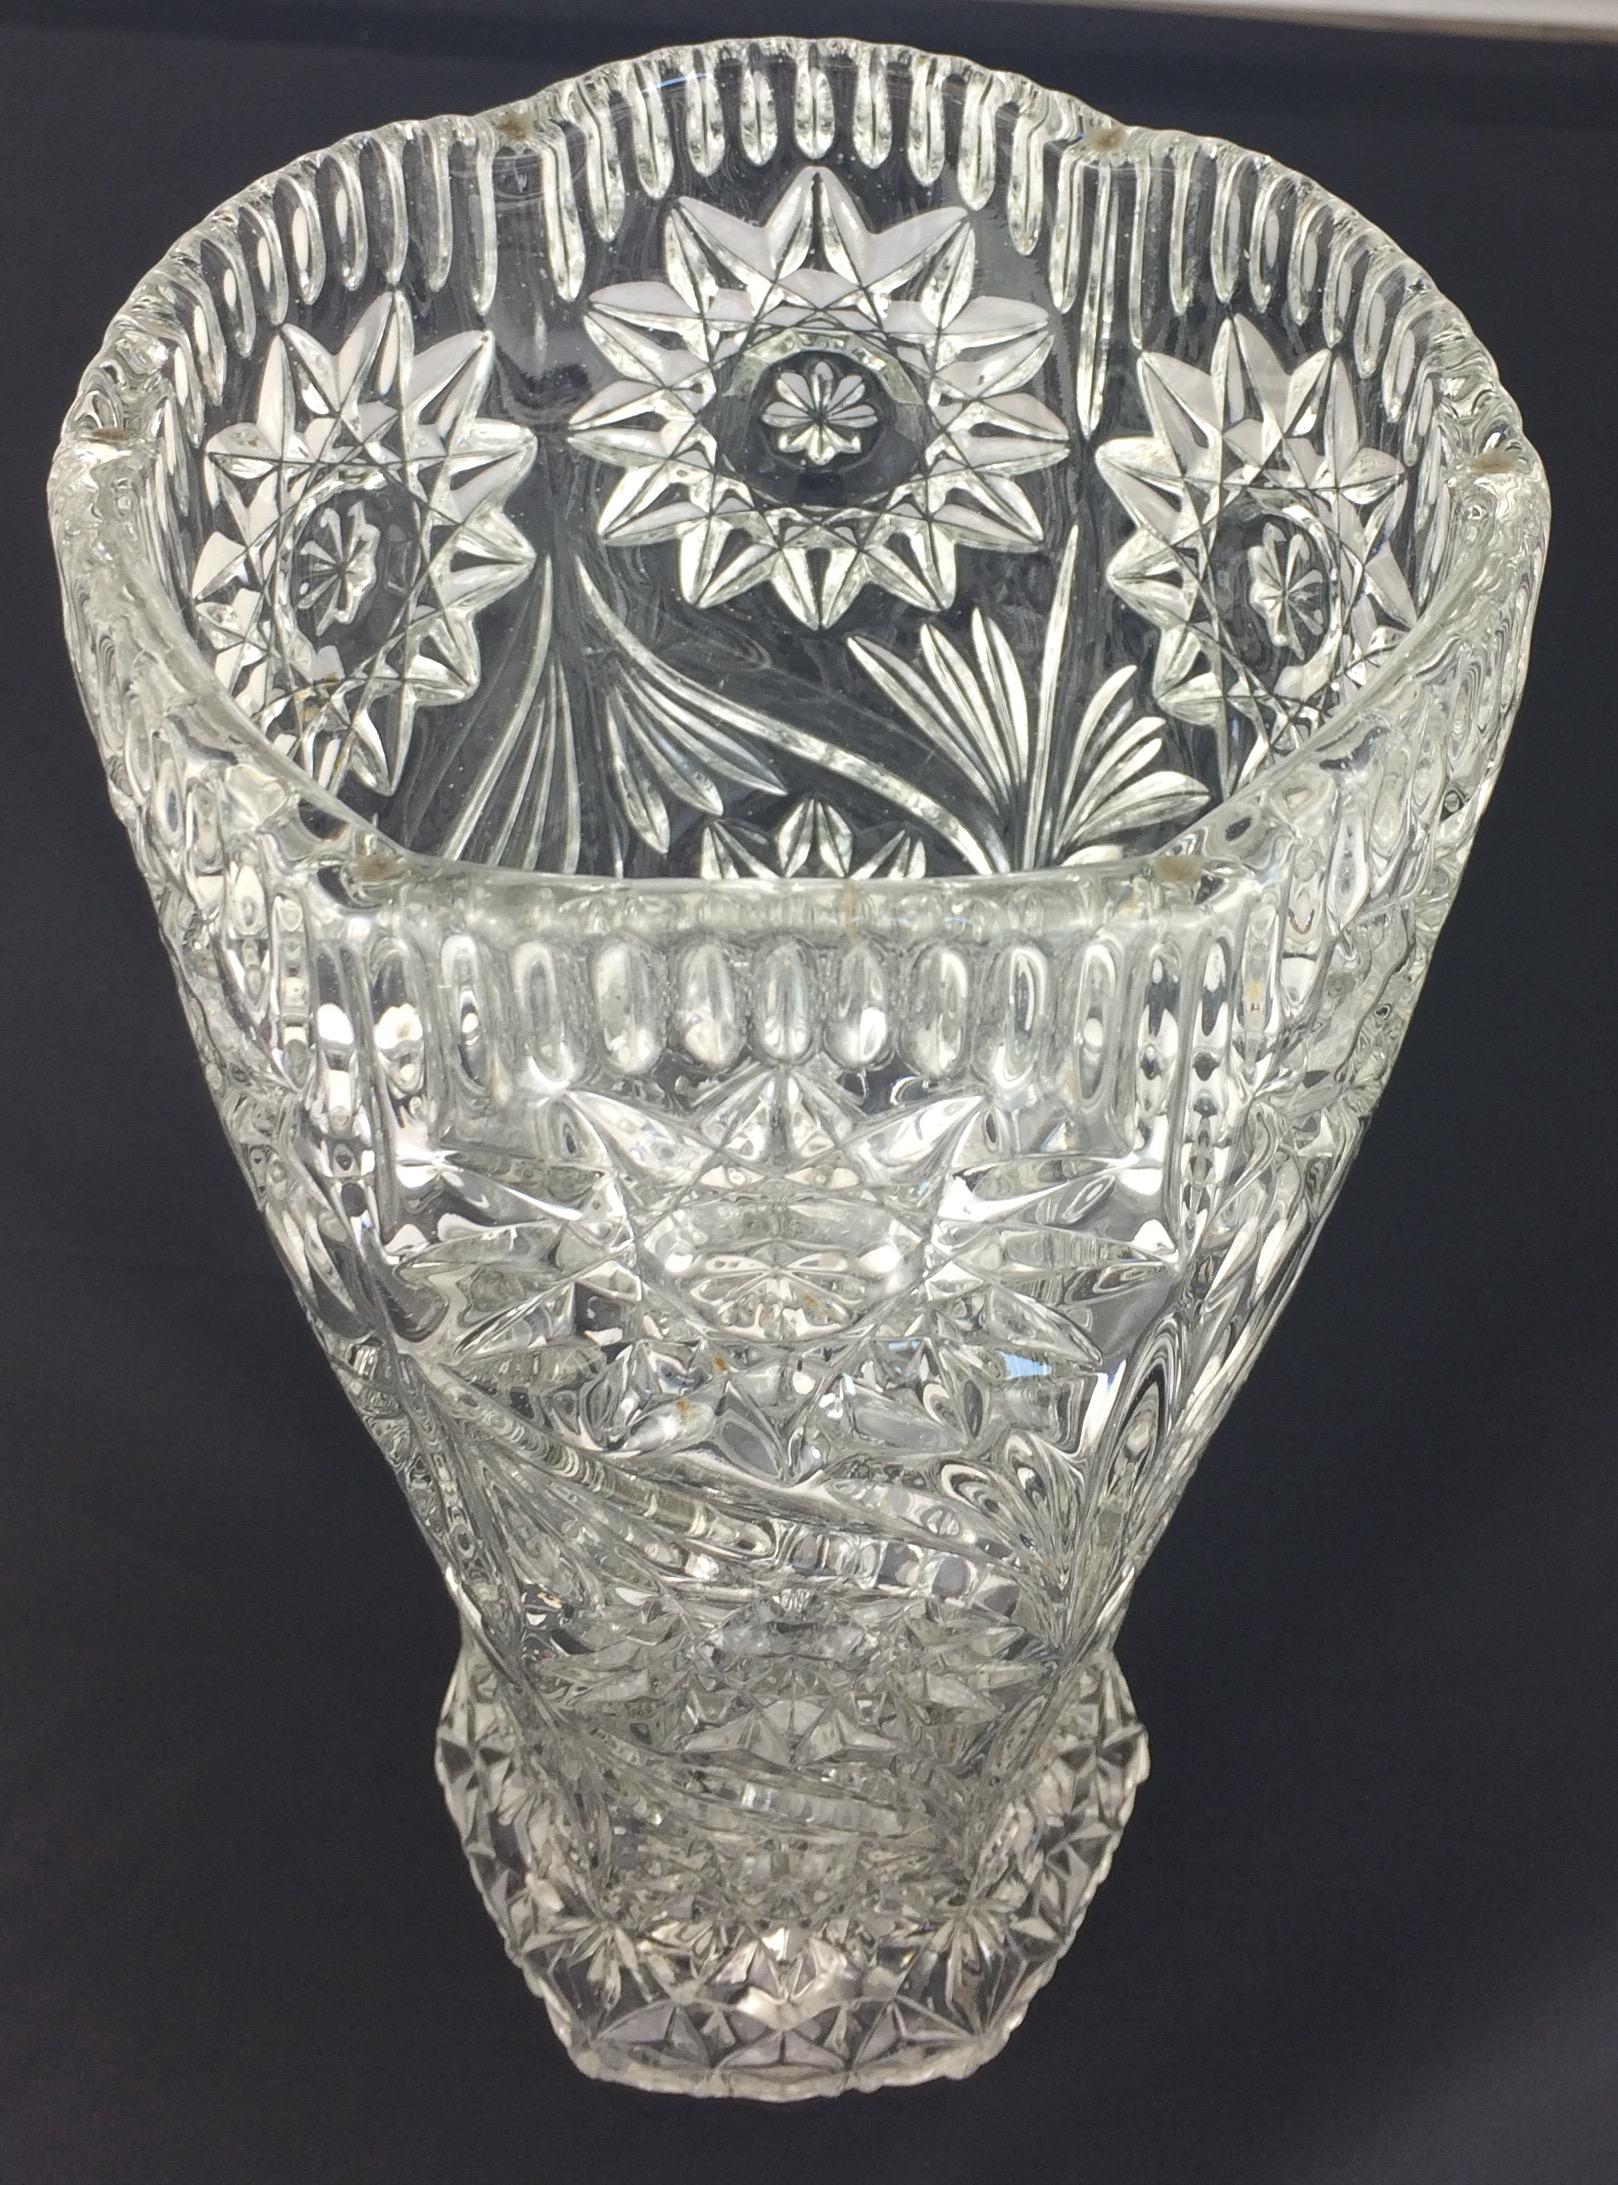 Une pièce magnifique faite d'un vase de très bonne qualité. Le motif est typique des verres d'art français du début du XXe siècle fabriqués par Baccarat, mais celui-ci n'est pas signé. 

Parfait état. Pas d'ébréchures ni de fissures. C'est une belle